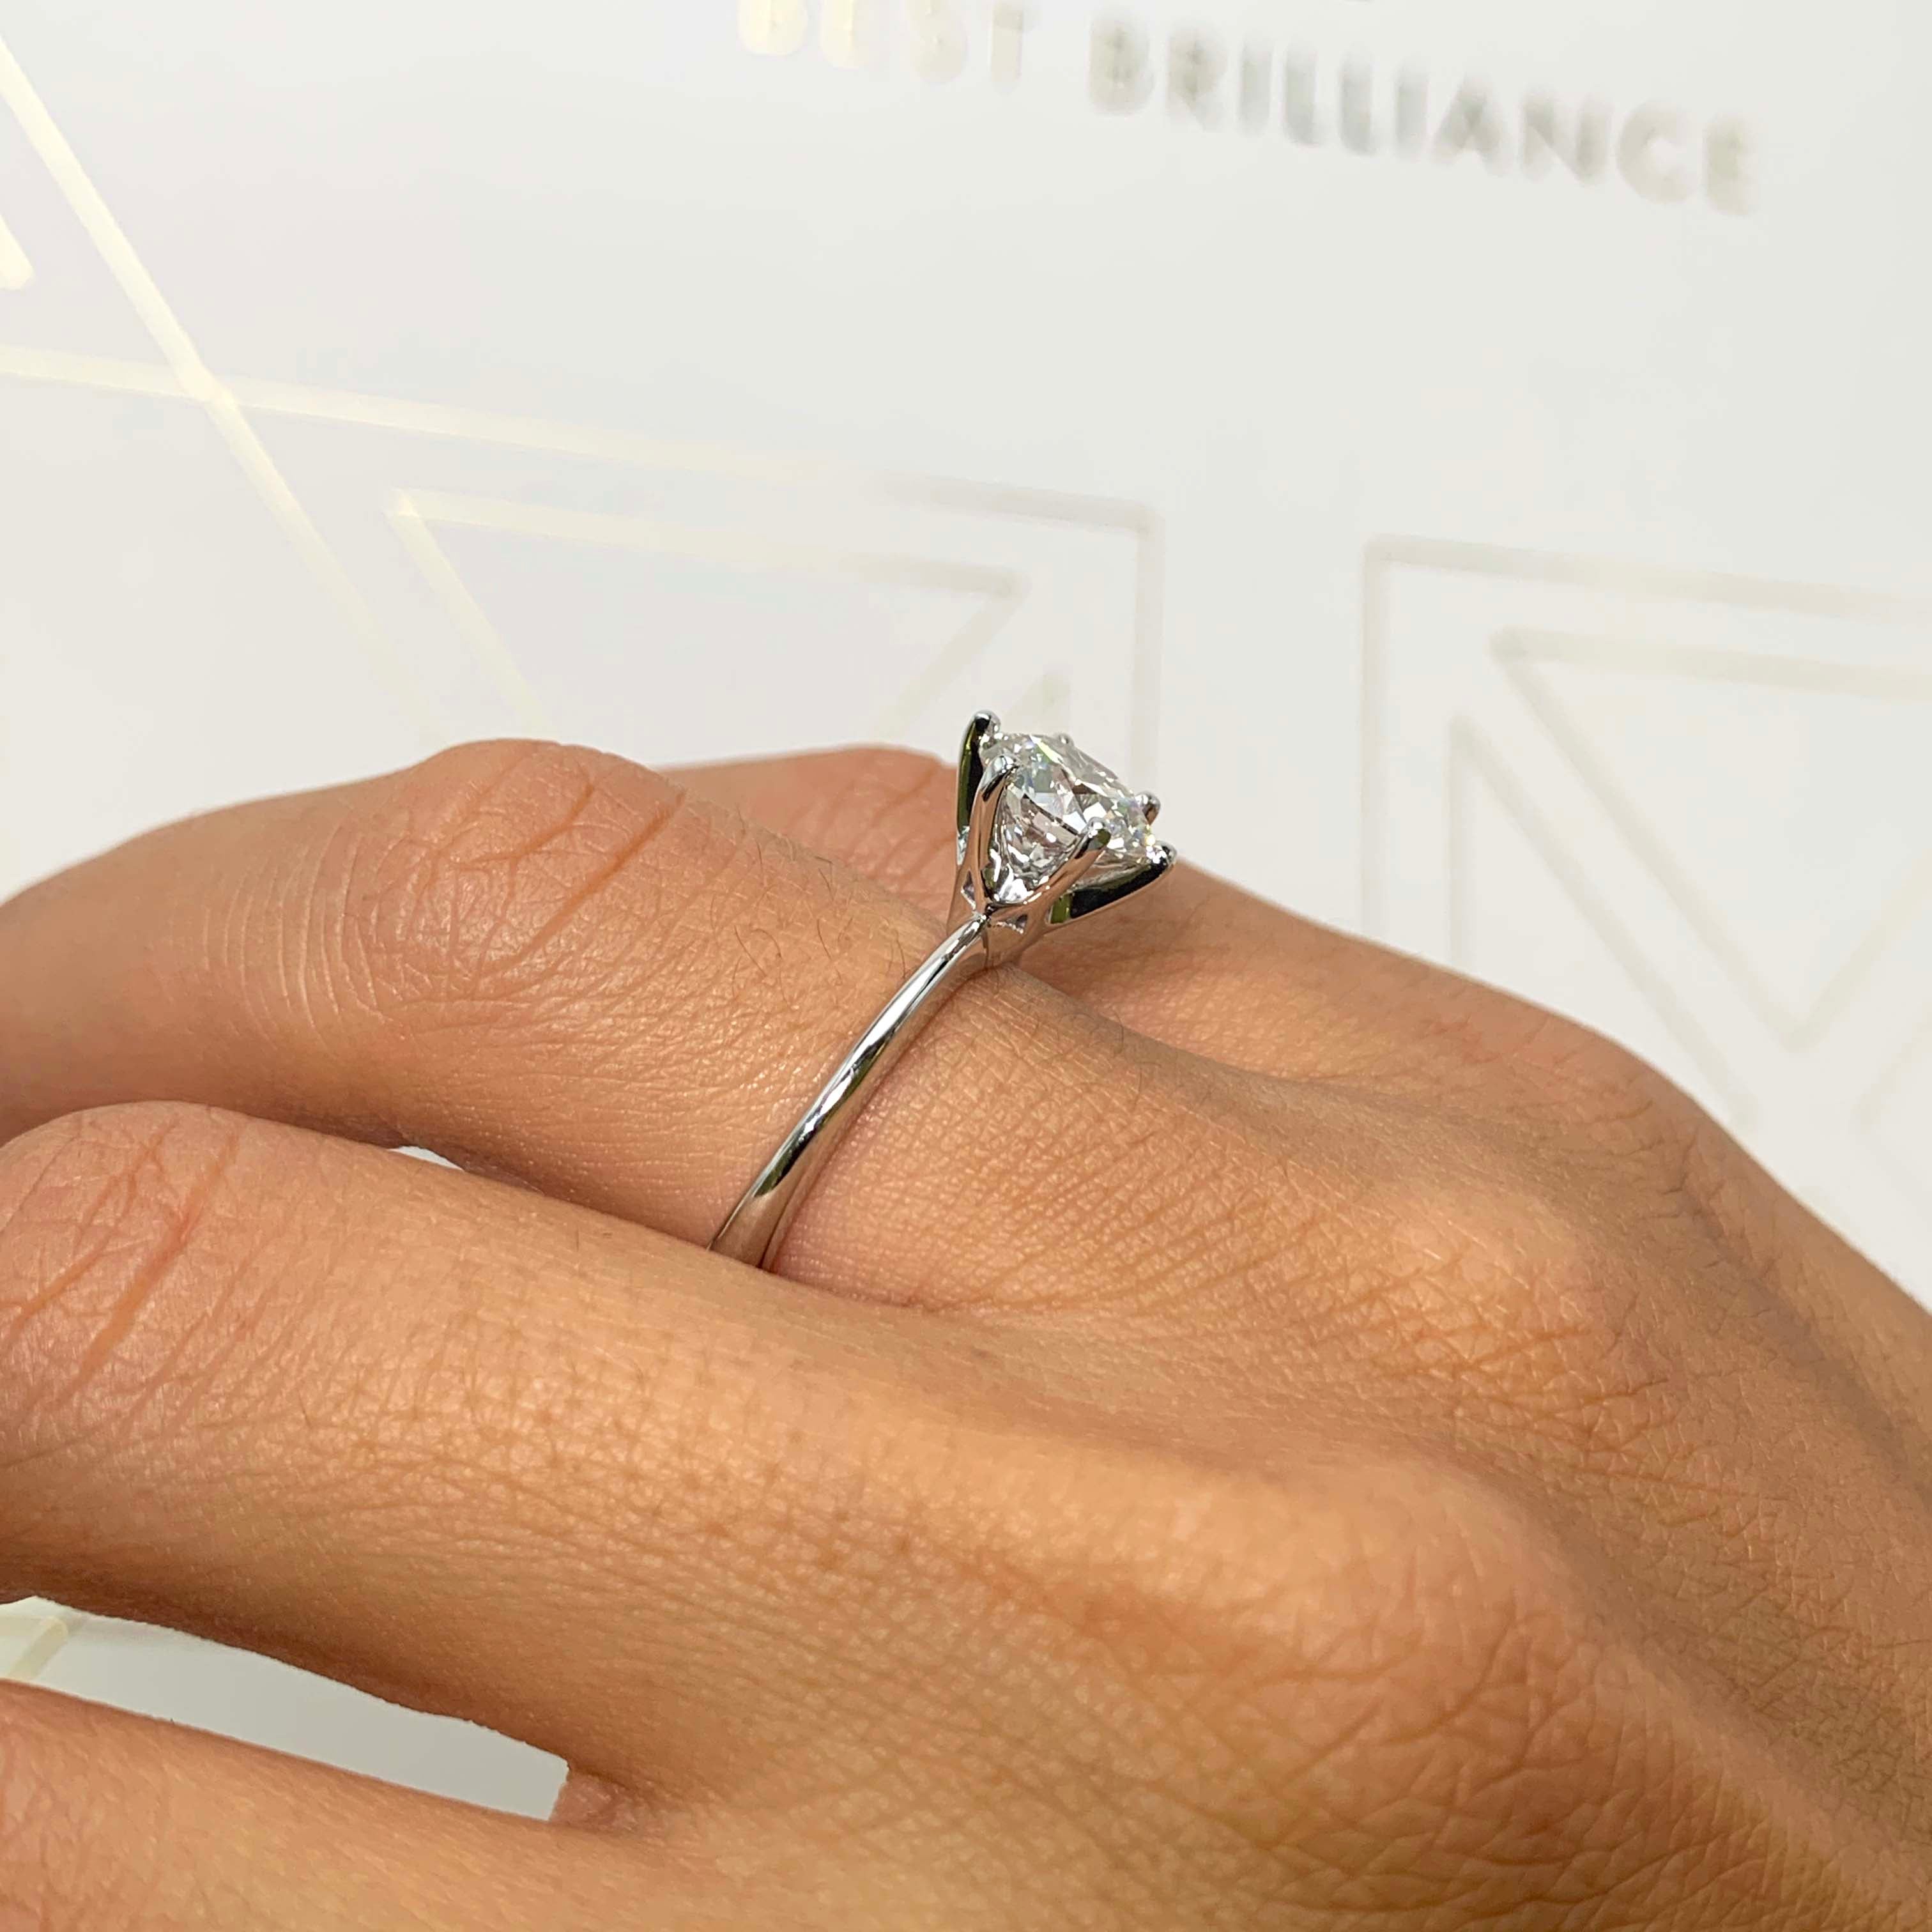 Samantha Diamond Engagement Ring   (2 Carat) -18K White Gold